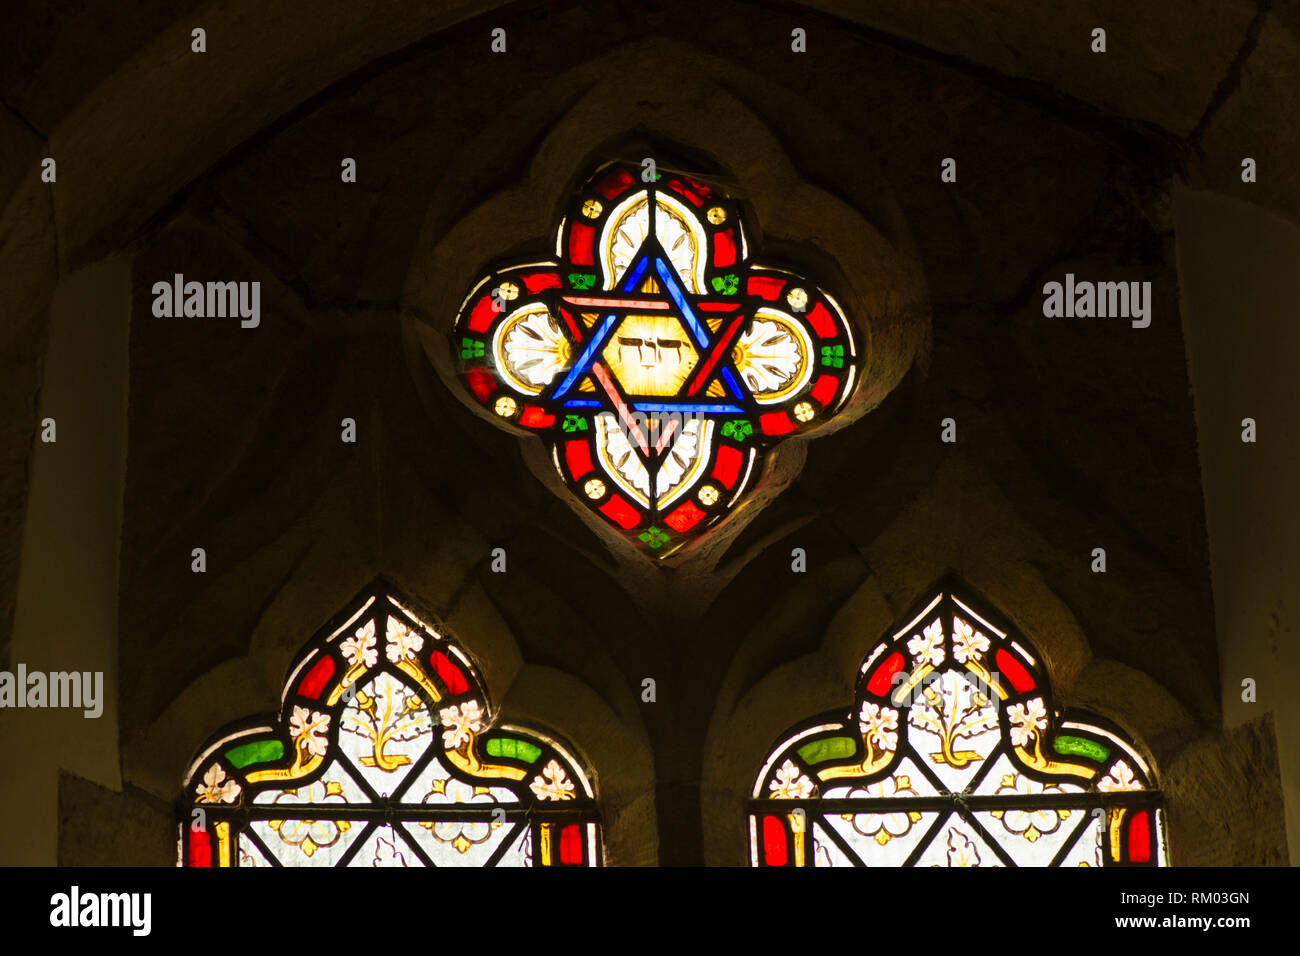 Tetragramaton, YHWH, JHVH, Ebraico lettere per il nome di Dio nella finestra di vetro colorato, chiesa di Santa Maria, Chithurst, la chiesa di St Mary, Sussex, Regno Unito. Foto Stock